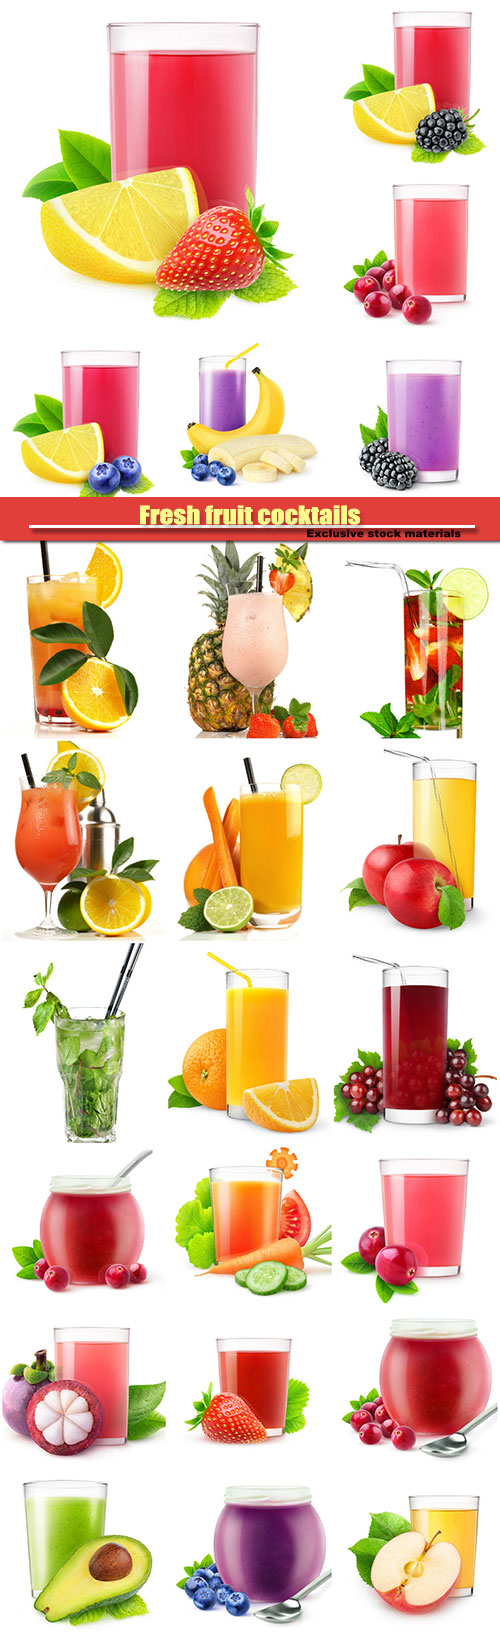 Fresh fruit cocktails